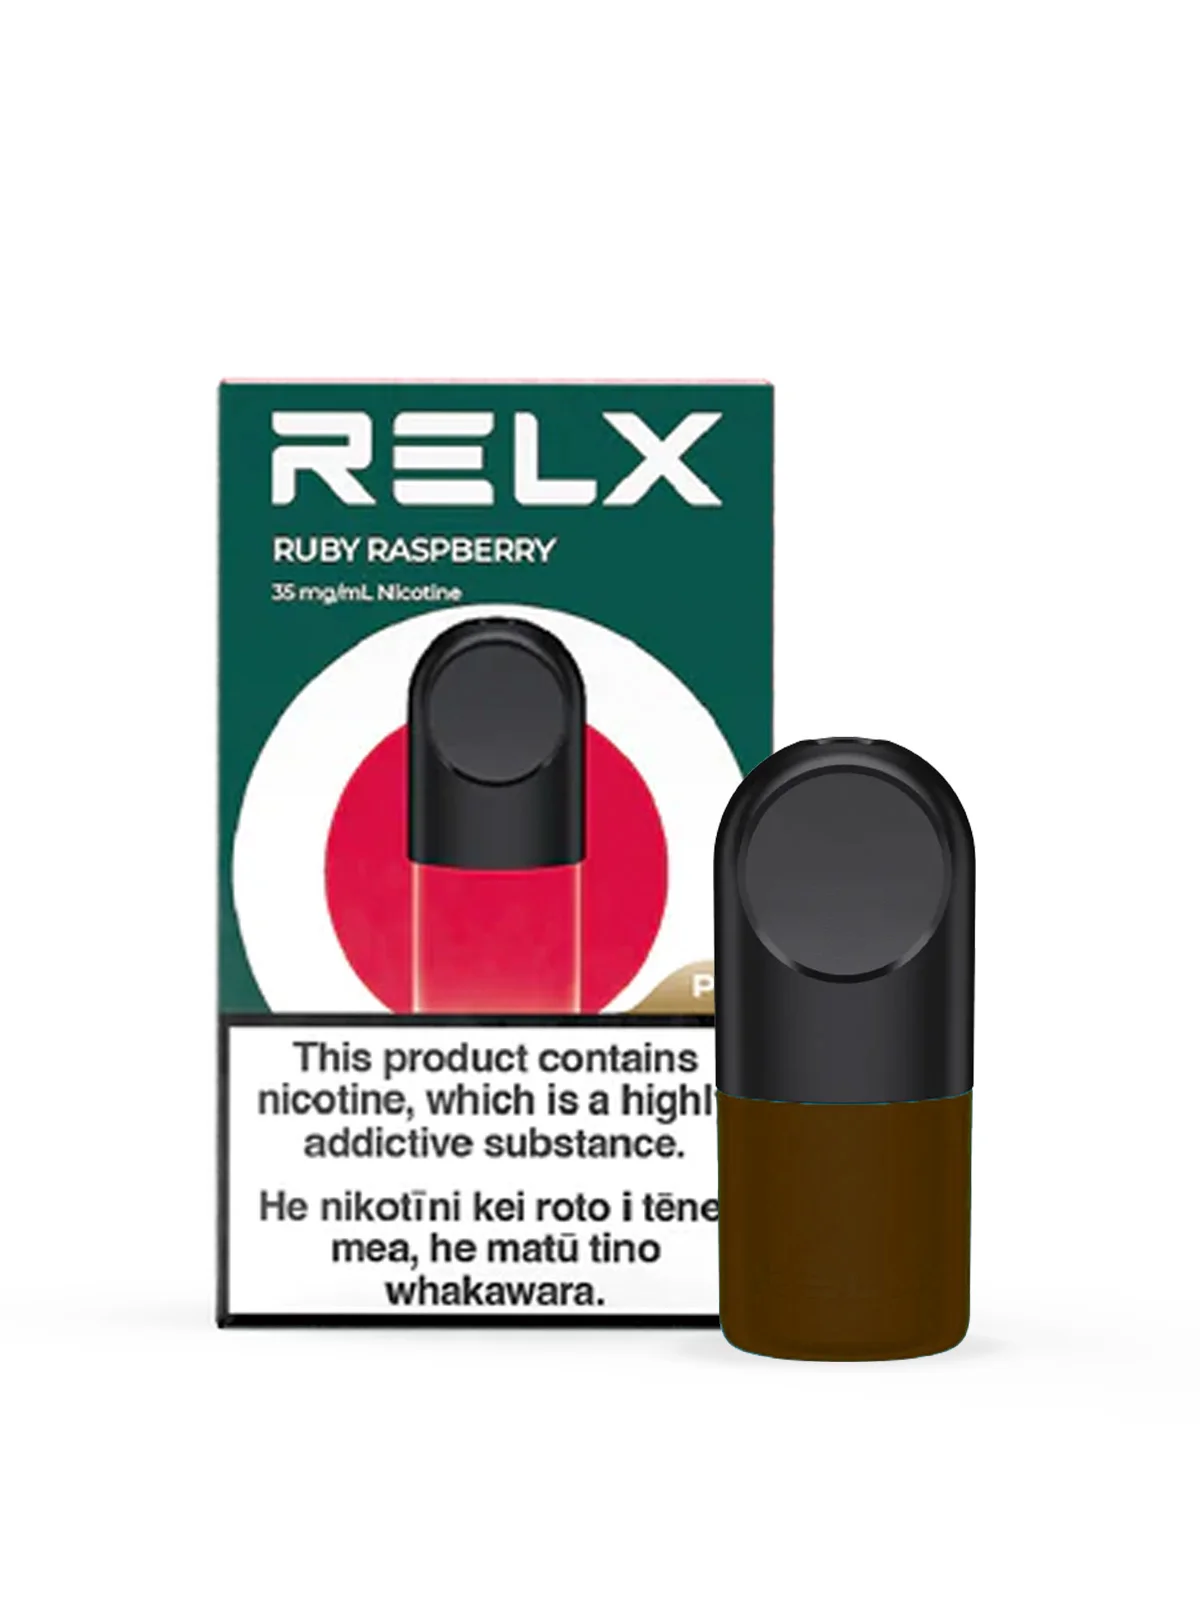 relx-infinity-single-pod-ruby-raspberry-image-1-70550